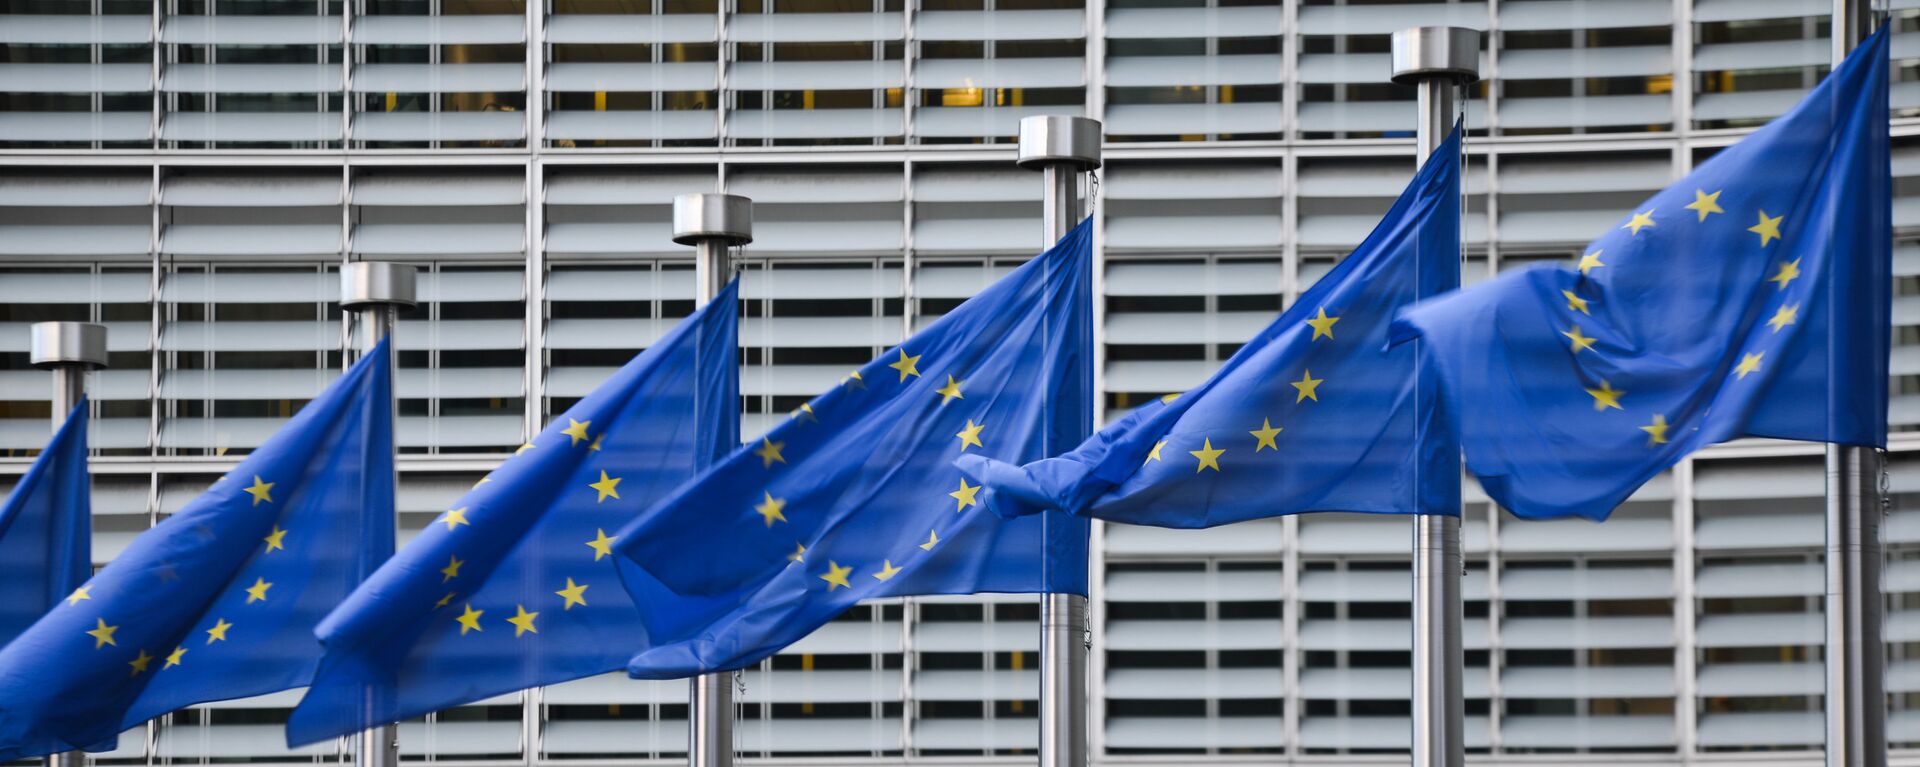 Флаги Евросоюза у здания штаб-квартиры Европейской комиссии в Брюсселе - Sputnik Узбекистан, 1920, 31.10.2018